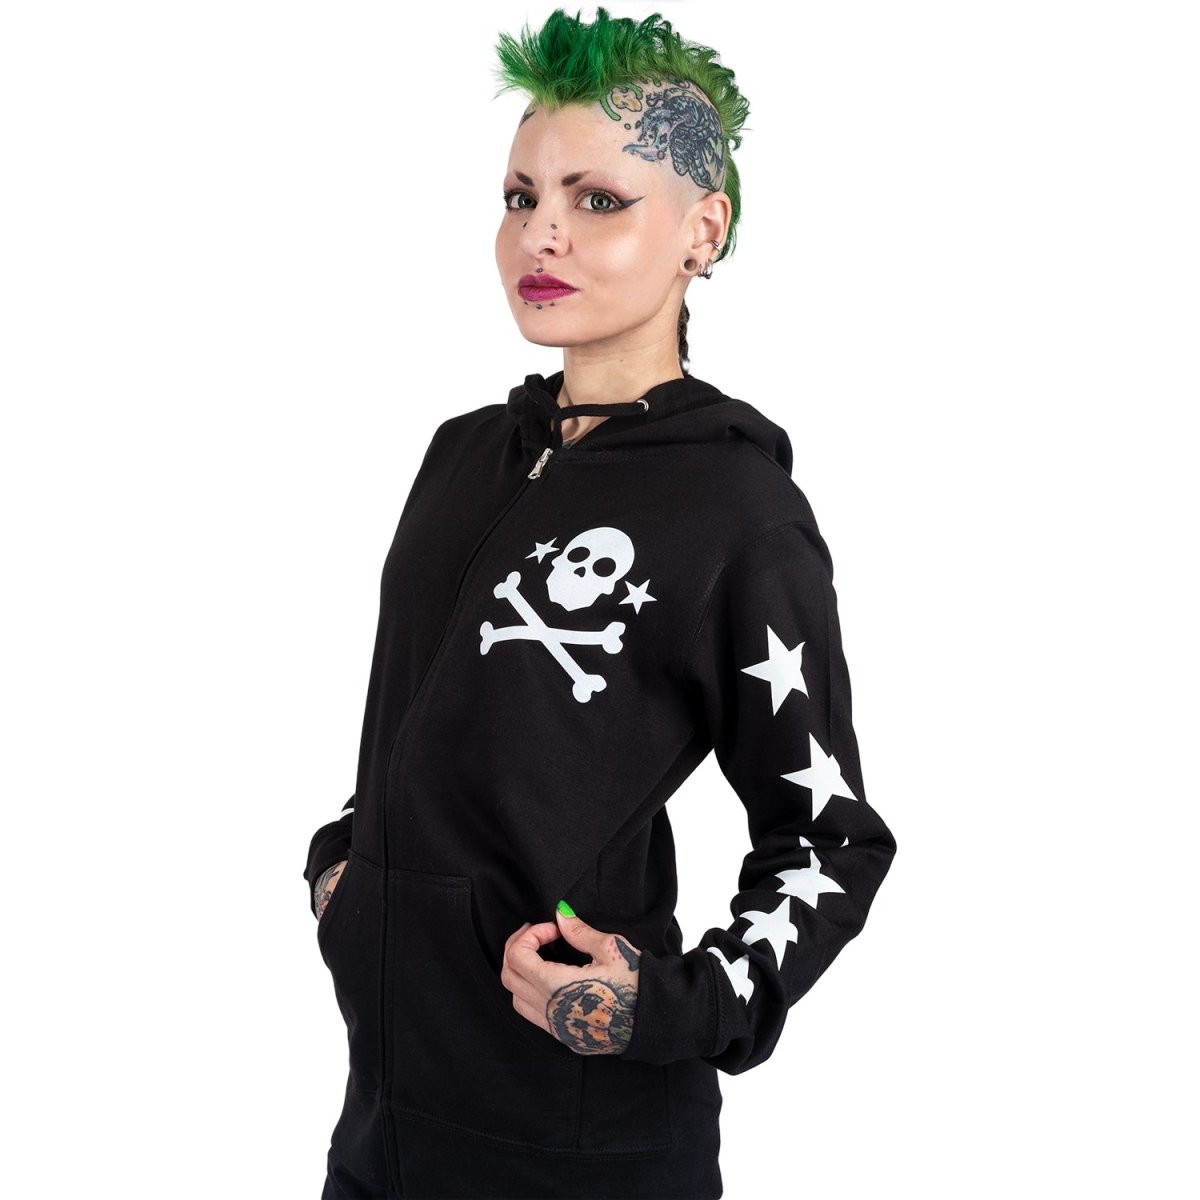 Too Fast | Star Studded Skull And Bones Zip Up Hoodie Hooded Sweatshirt